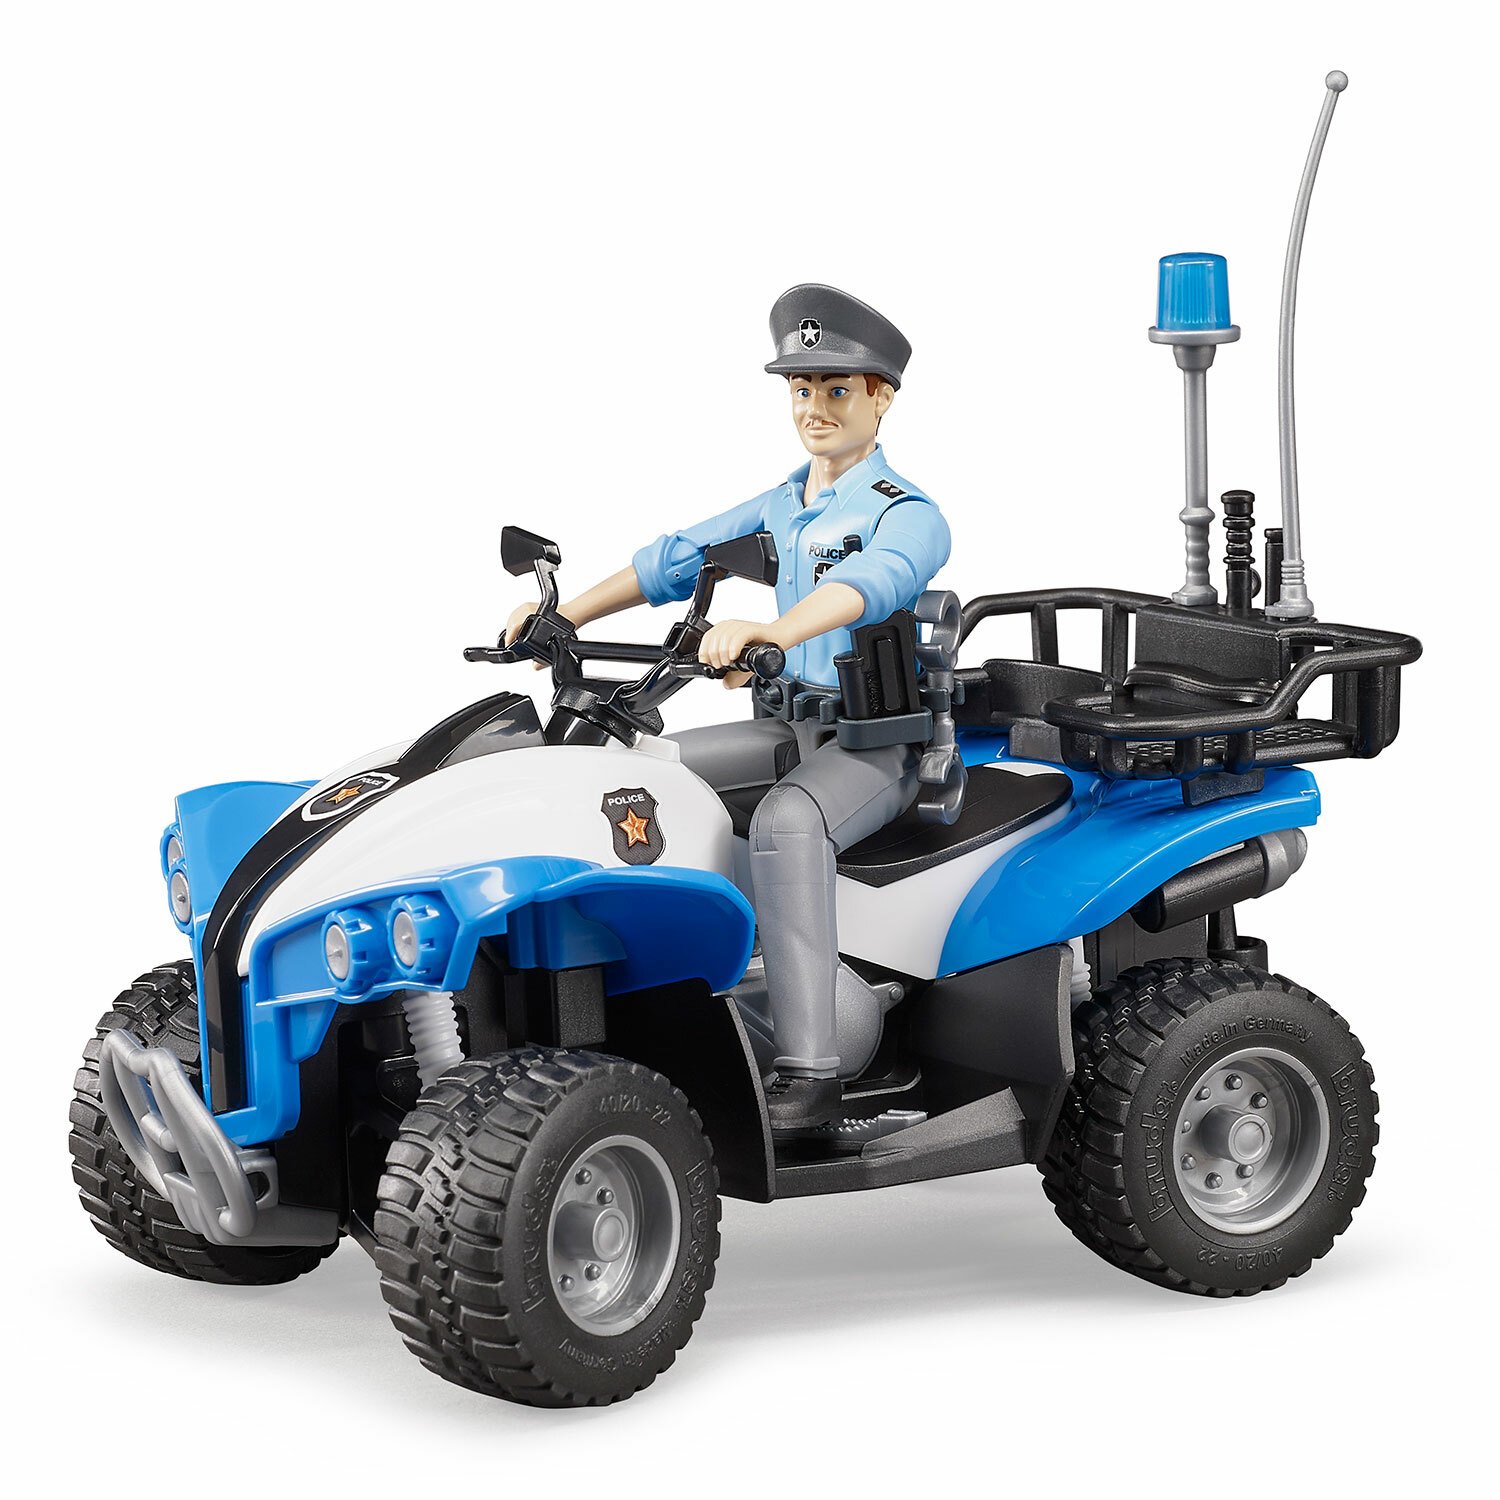 Полицейский квадроцикл с фигуркой